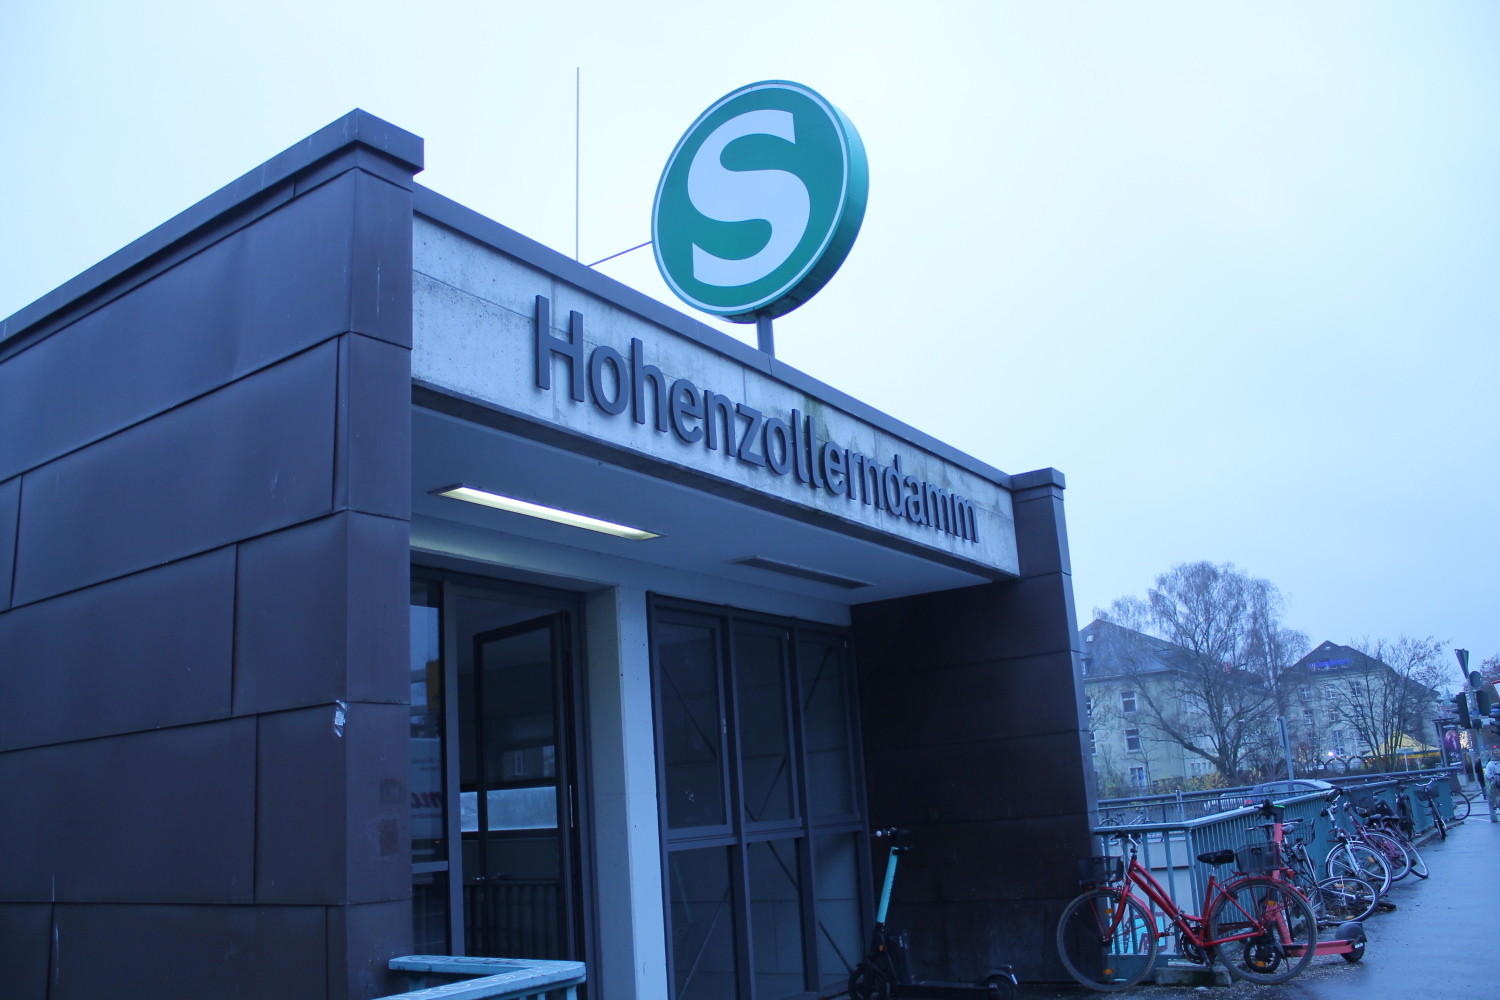 S Bahnhof Hohenzollerndamm